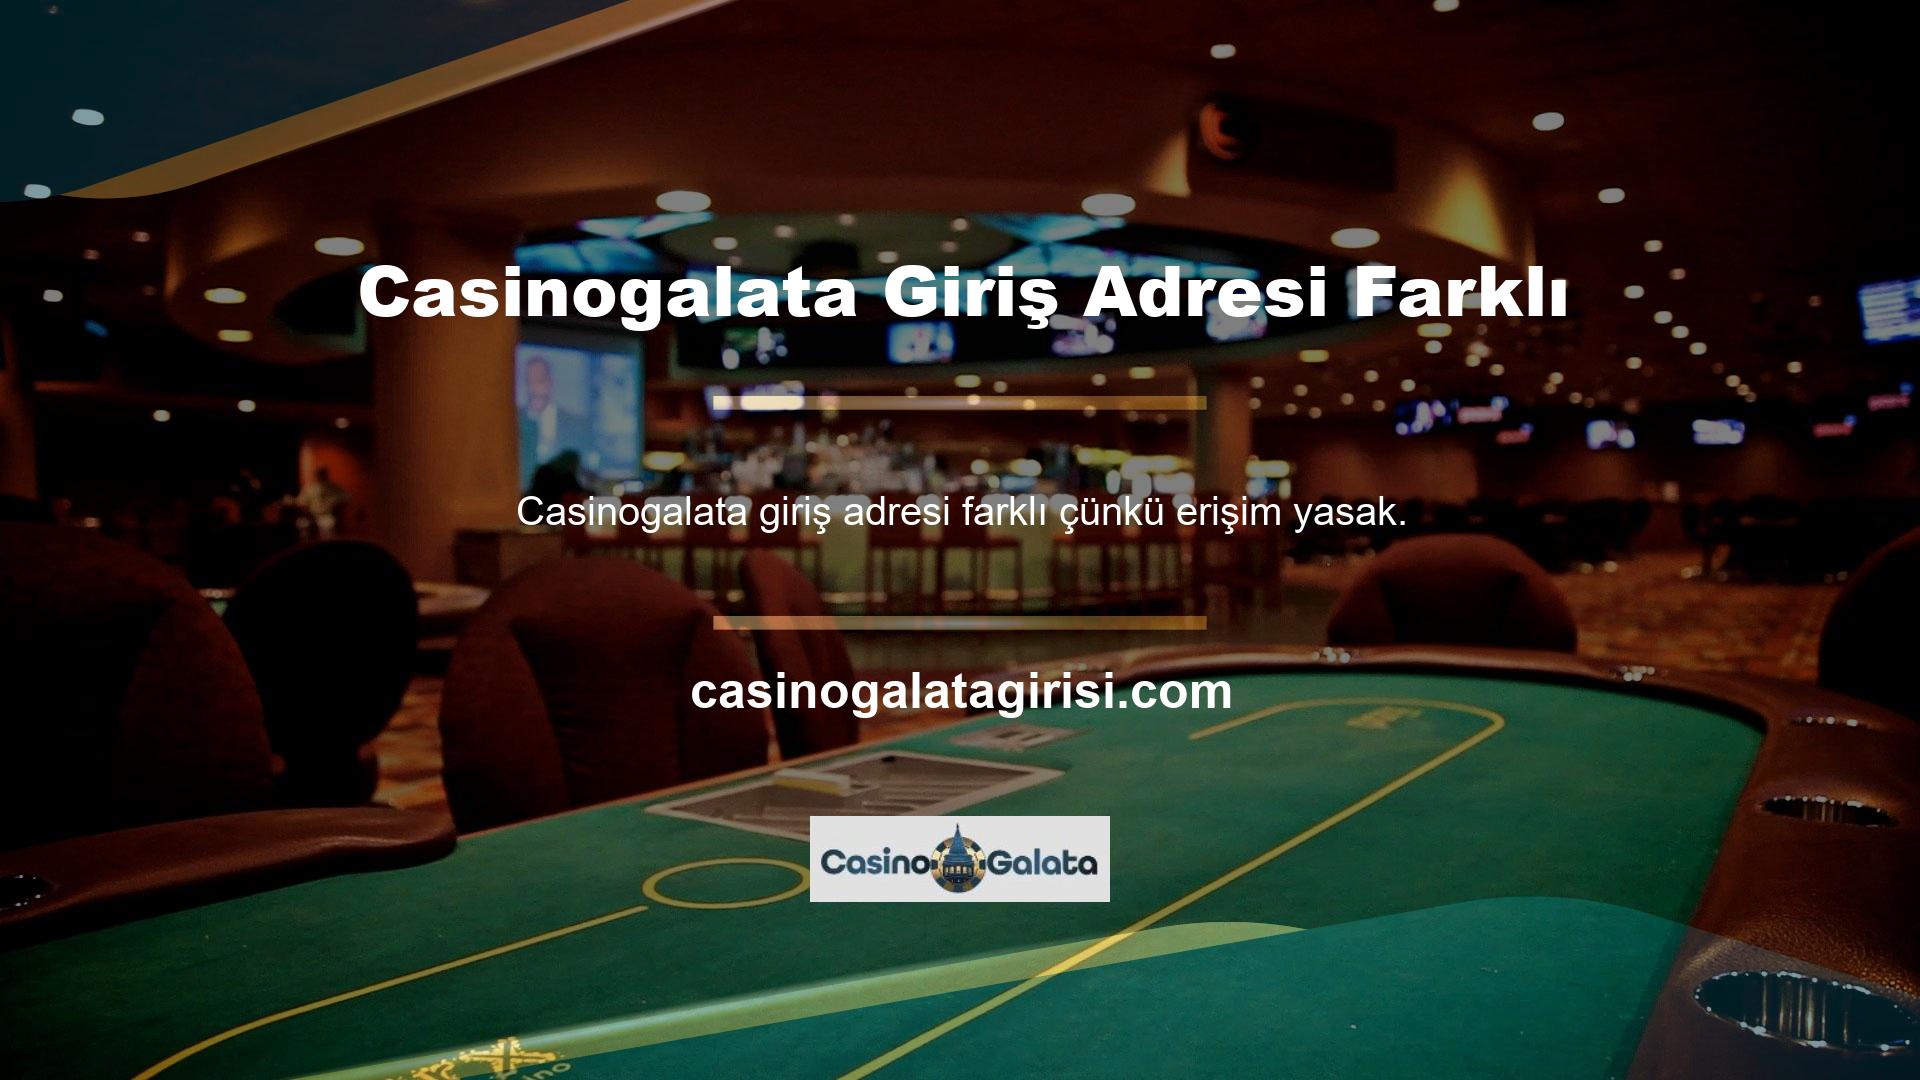 Casinogalata sitesi en popüler bahis sitelerinden biridir ve yeni adresi online bahis için kullanılmaktadır